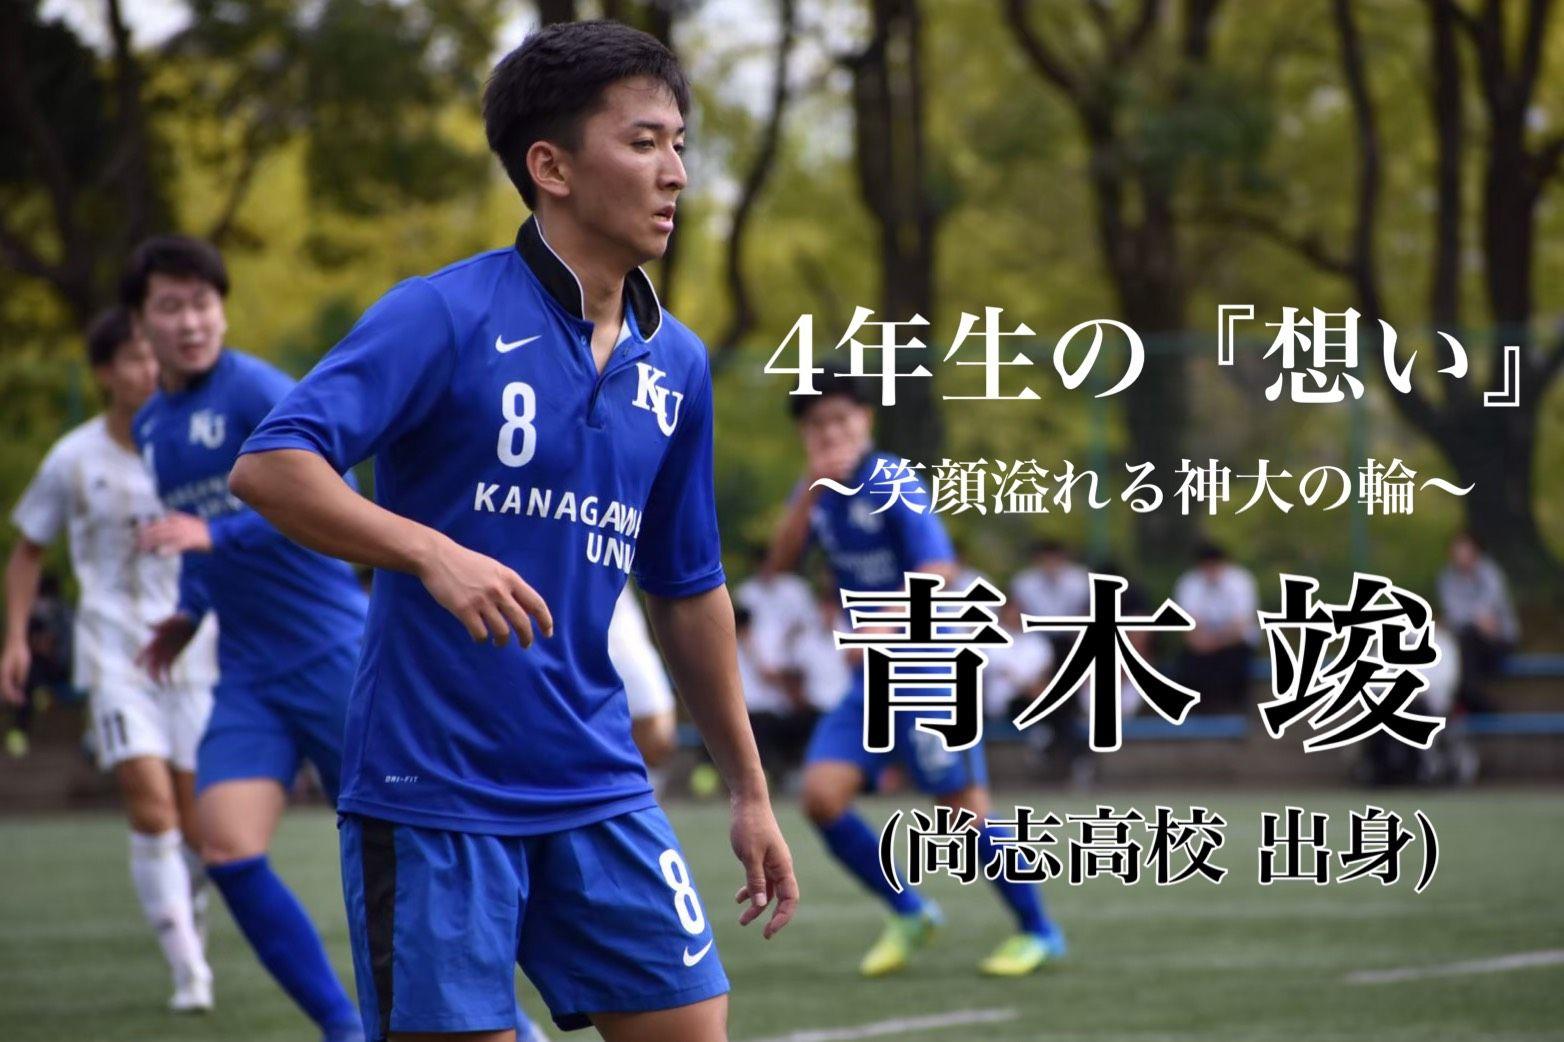 神奈川大学サッカー部 スタッフブログ 4年生の 想い 笑顔溢れる神大の輪 Vol 12 青木 竣